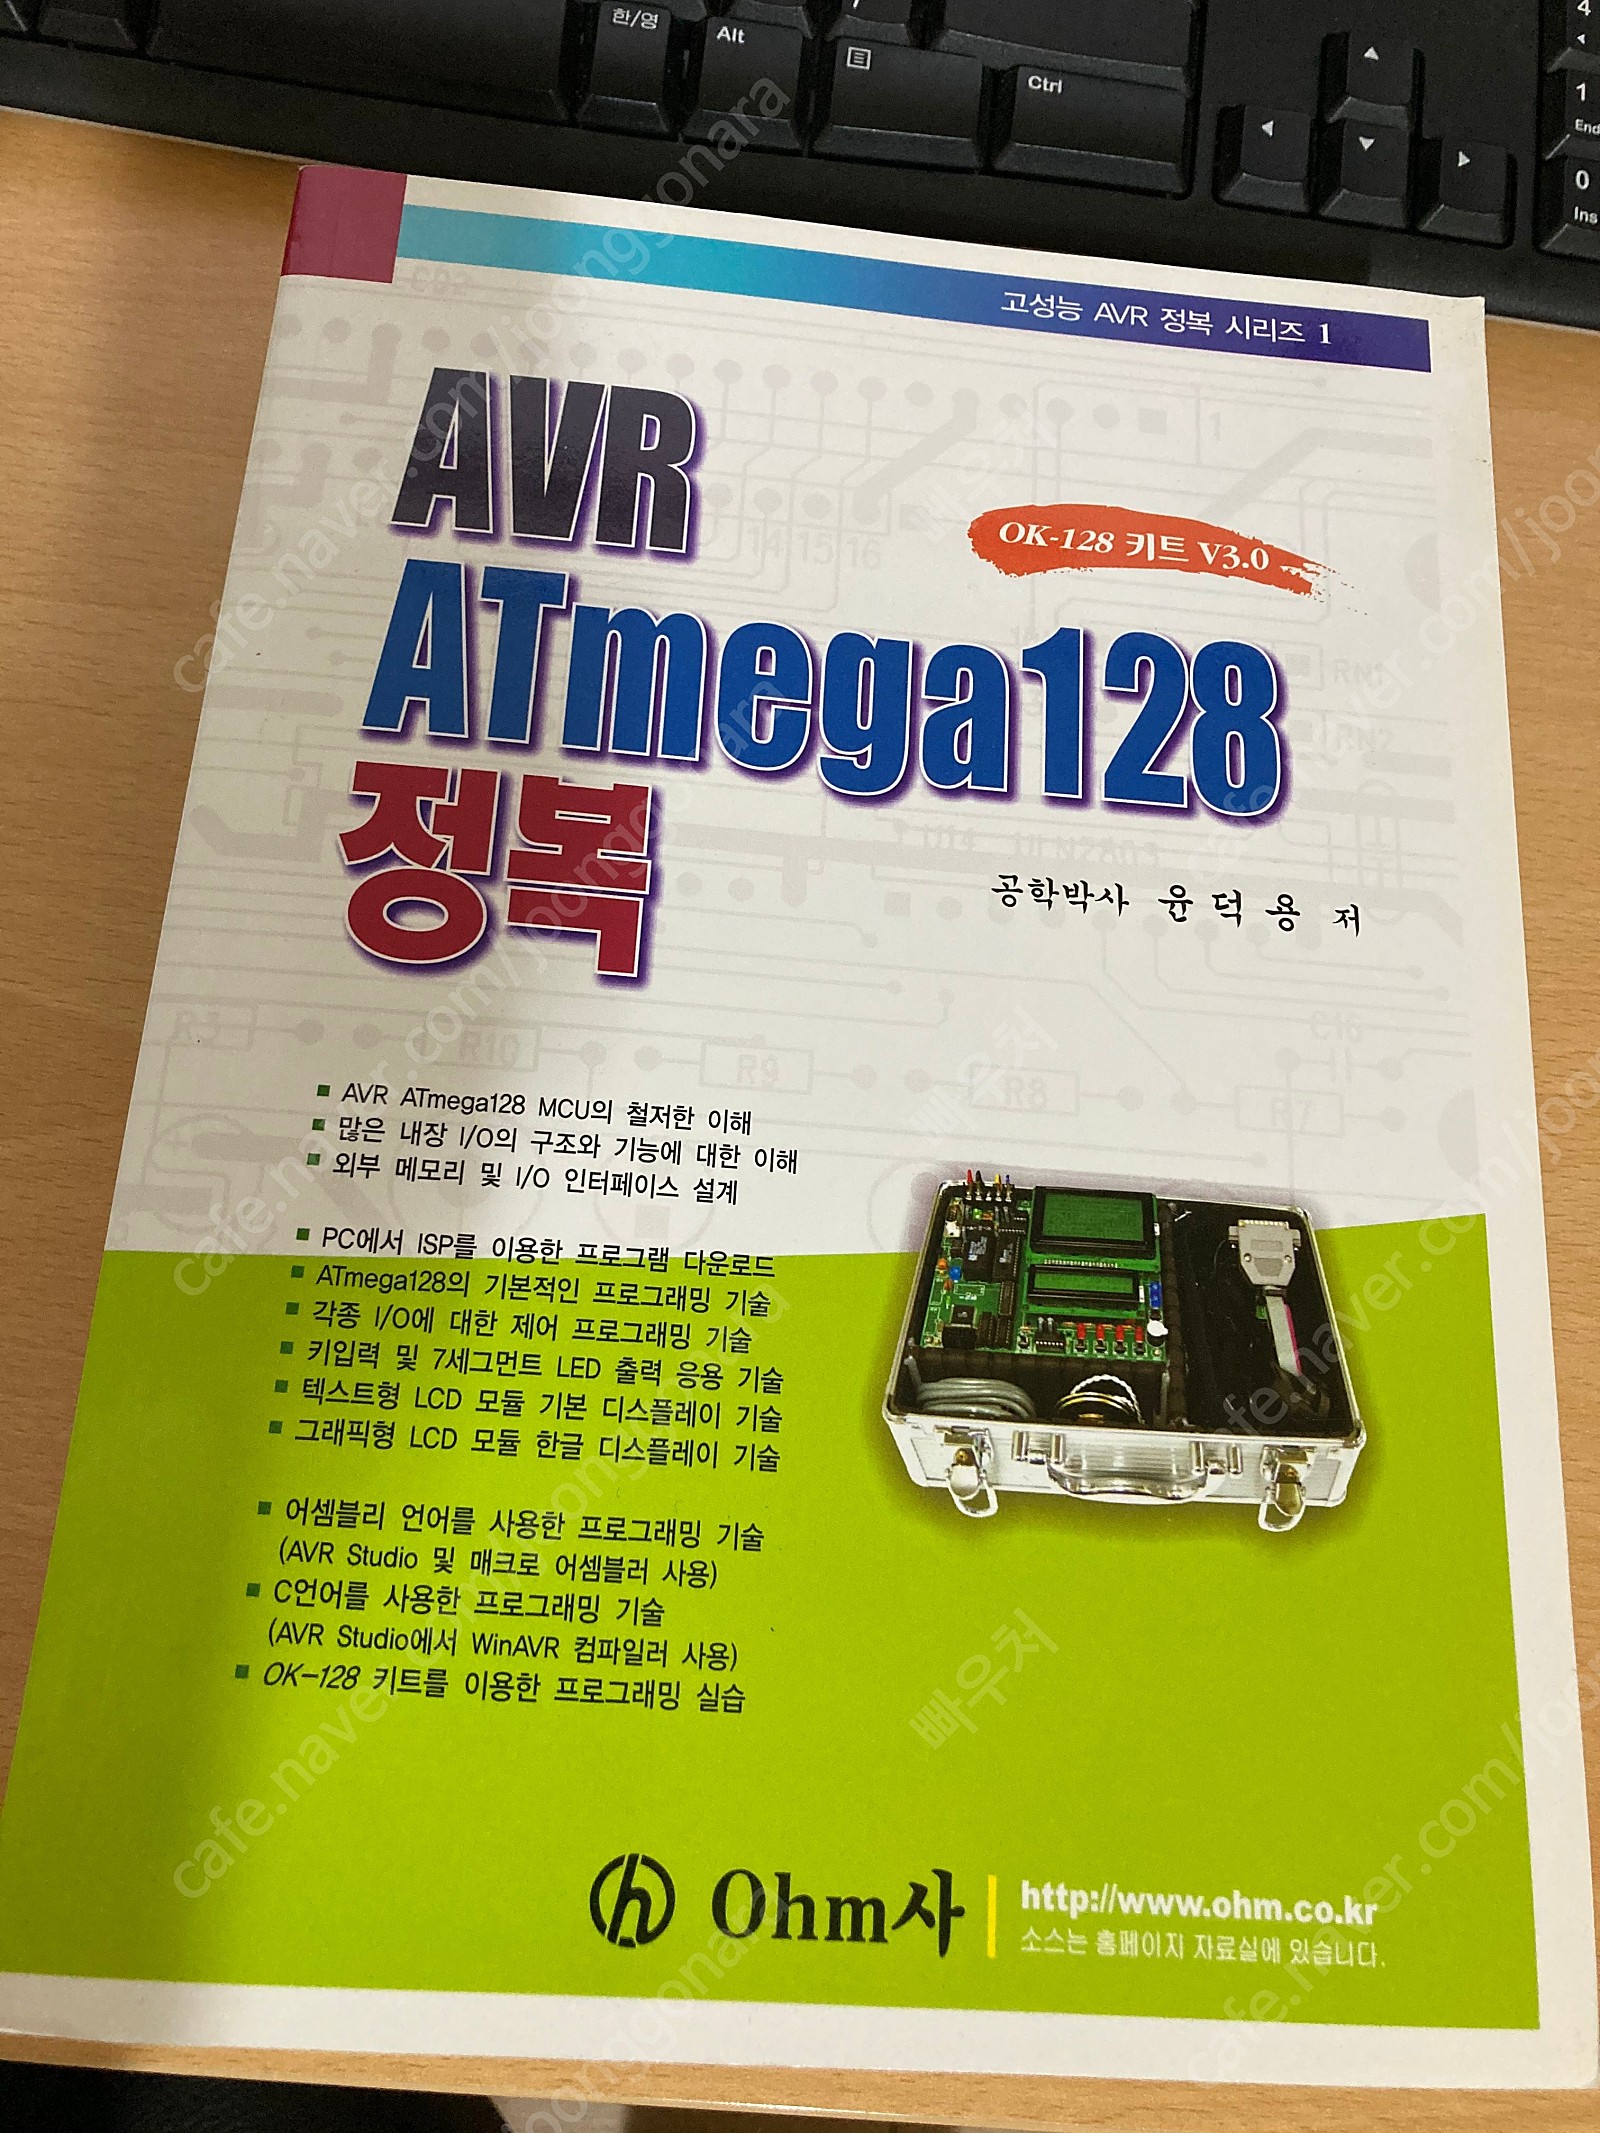 AVR ATmega128 정복 책, 키트 판매